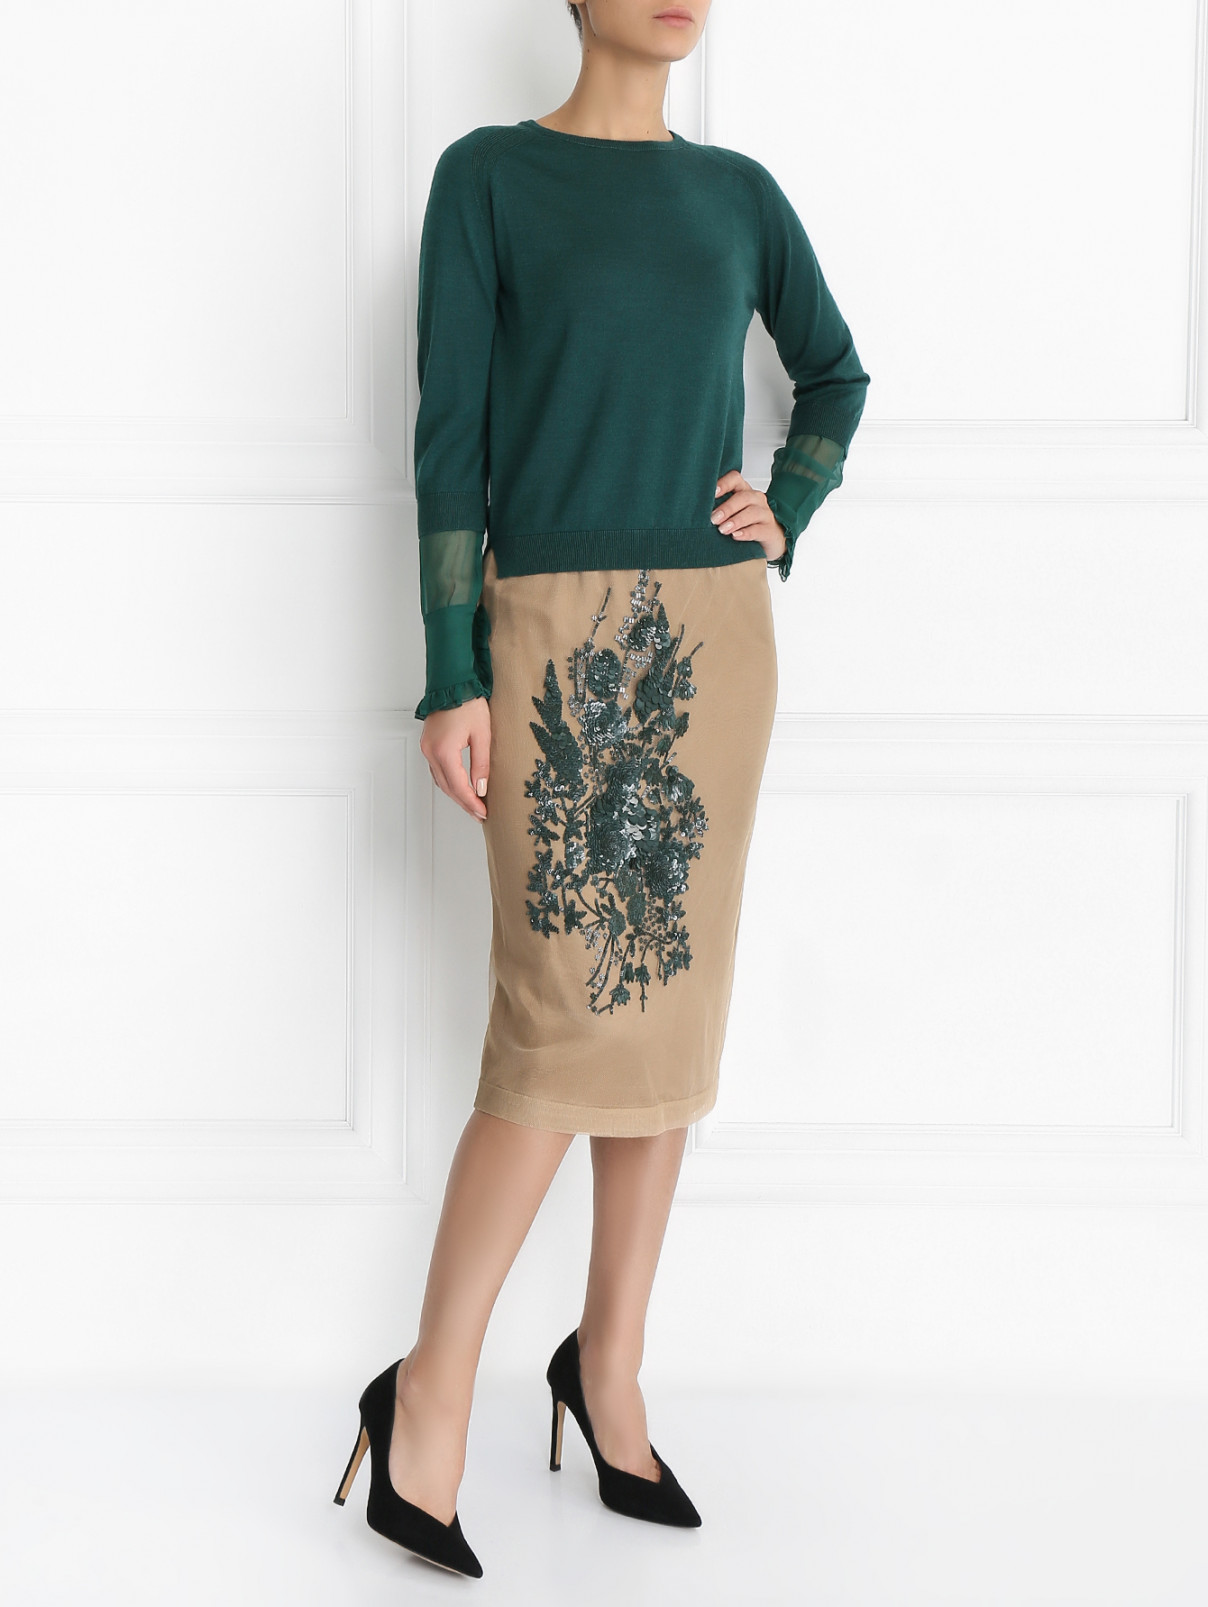 Джемпер из шерсти с шелковыми манжетами N21  –  Модель Общий вид  – Цвет:  Зеленый